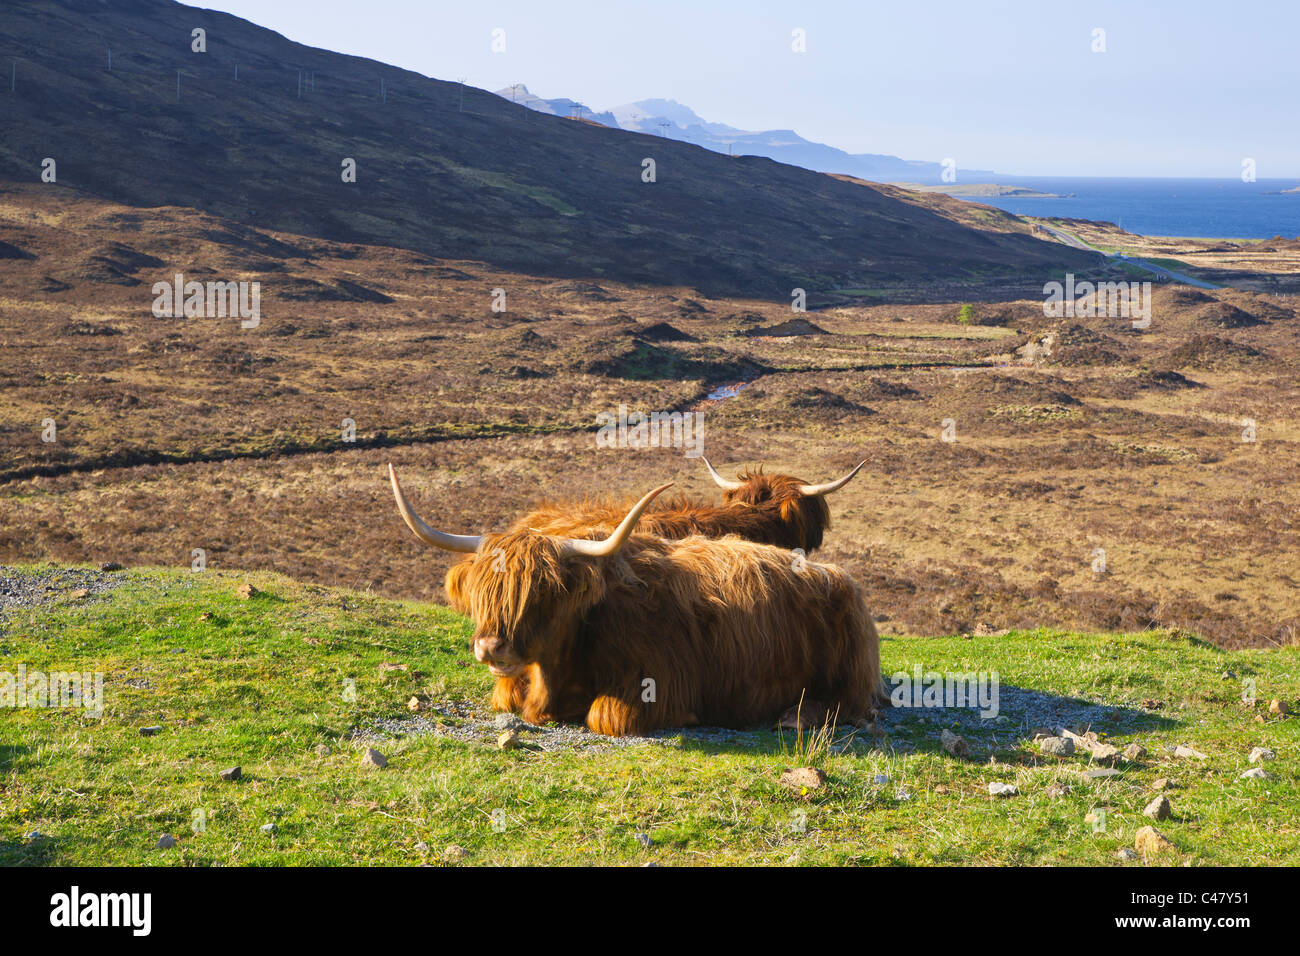 Highland vacas, Cuillins, Isla de Skye, la región de tierras altas, Escocia Foto de stock